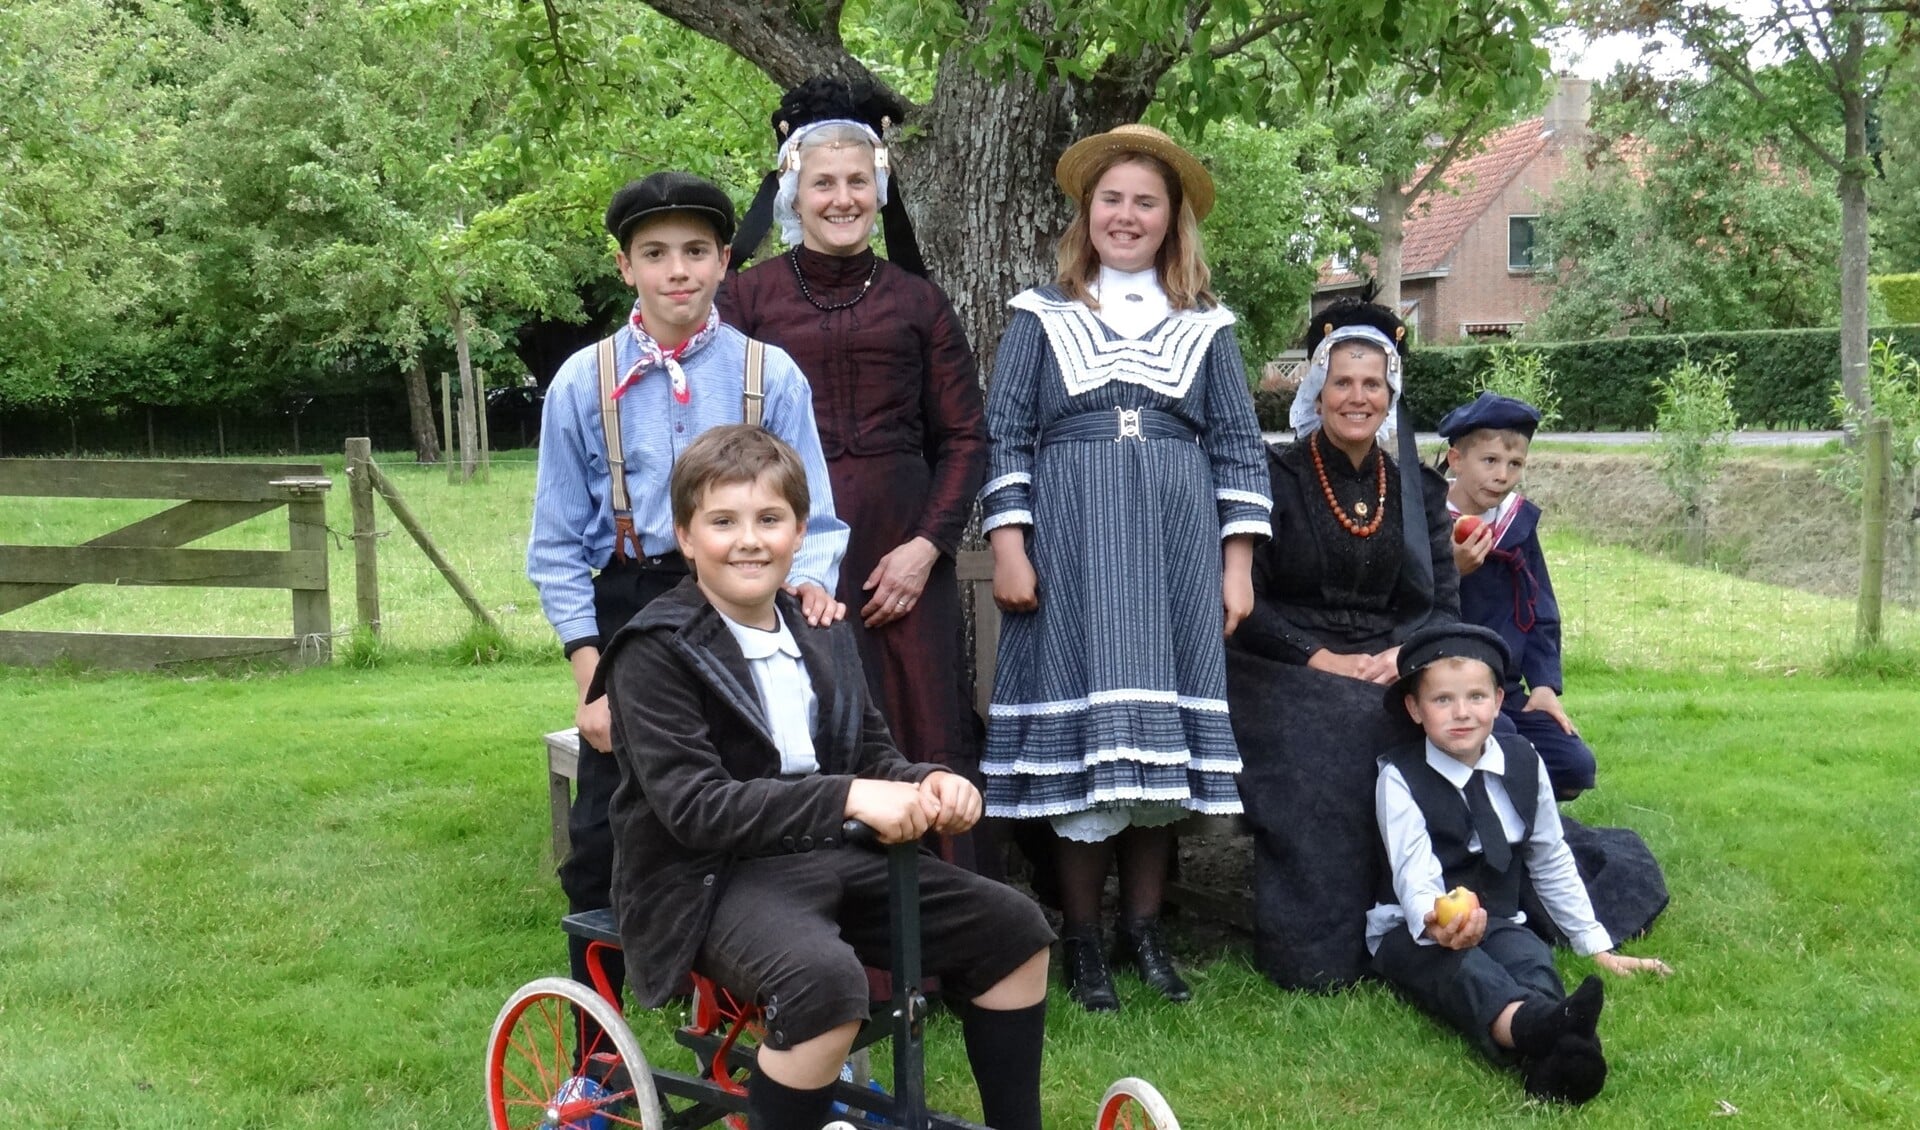 Onderweg ontmoeten de wandelaars dames, heren en kinderen in West-Fries kostuum. (Foto: Jan Smit)